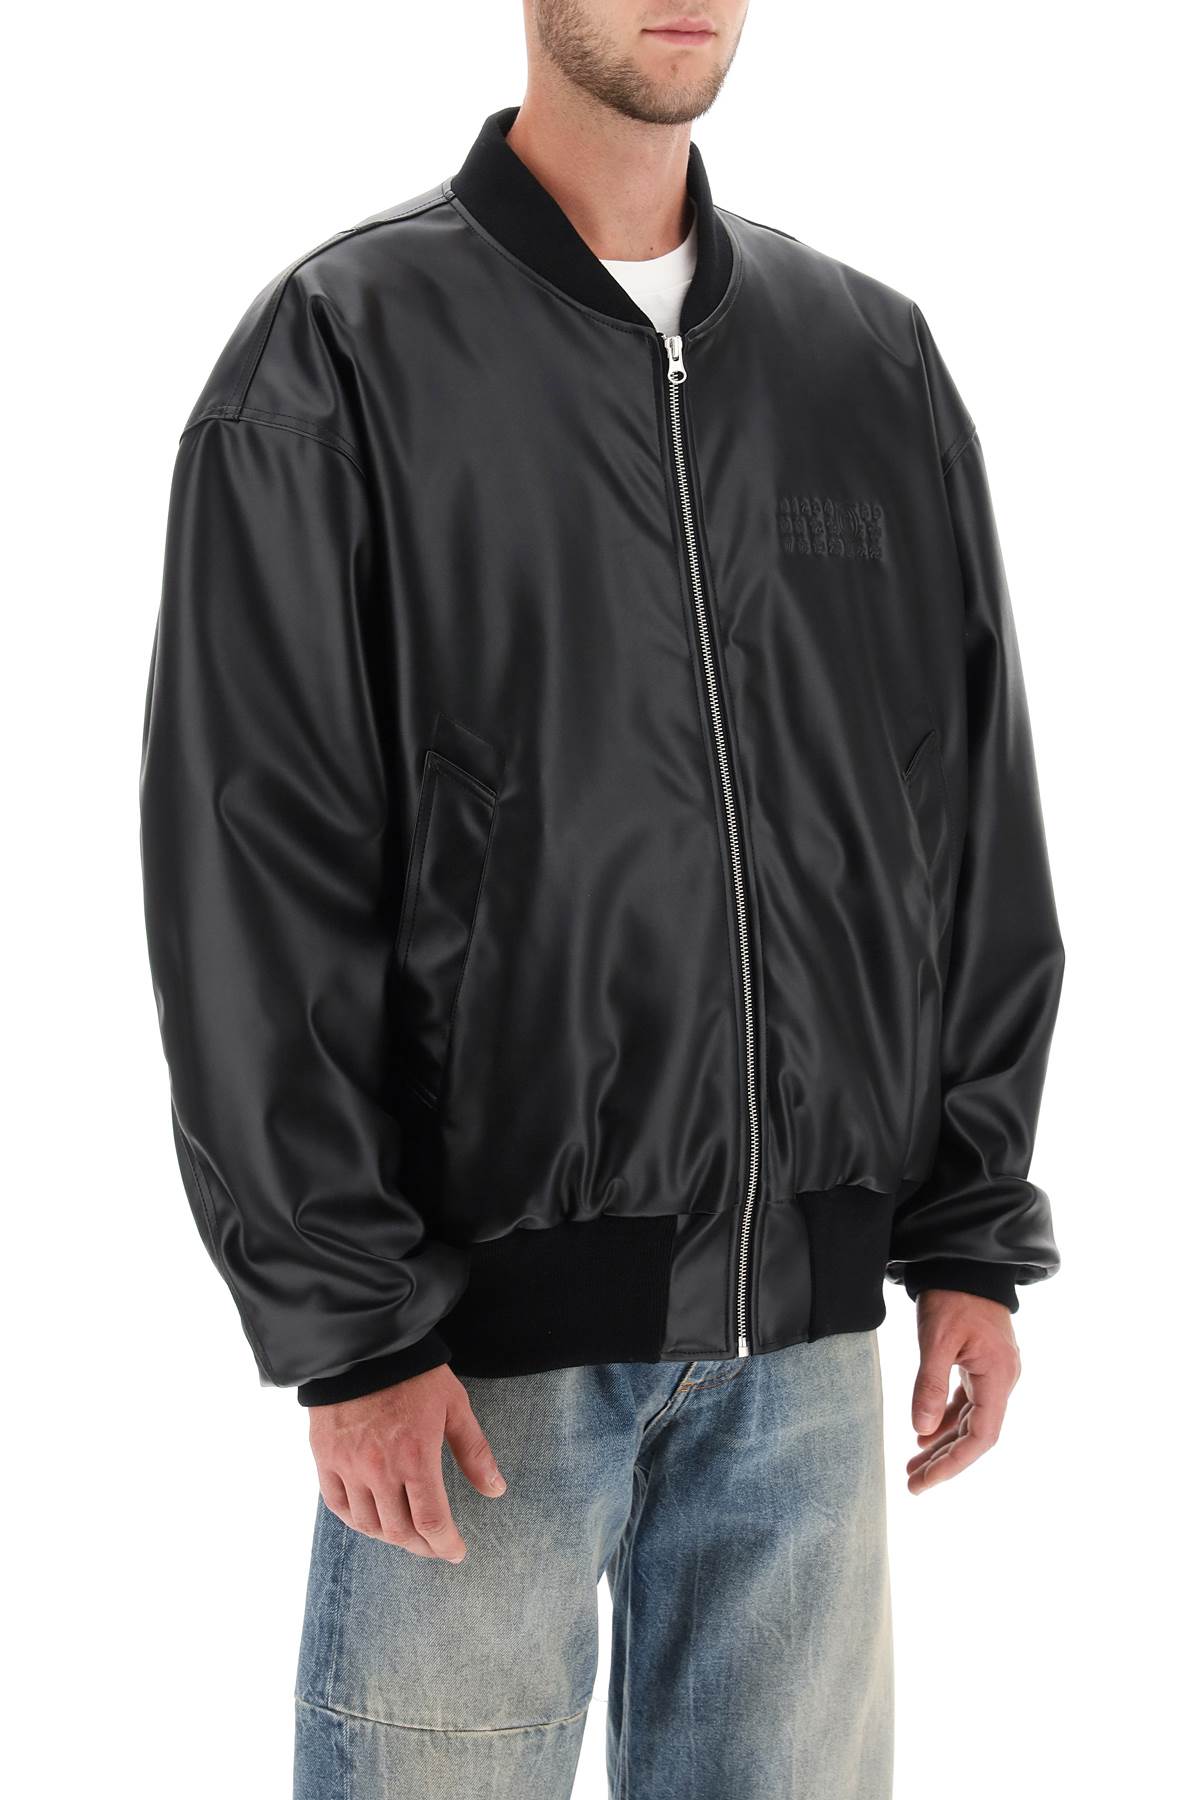 Mm6 maison margiela faux leather bomber jacket-1